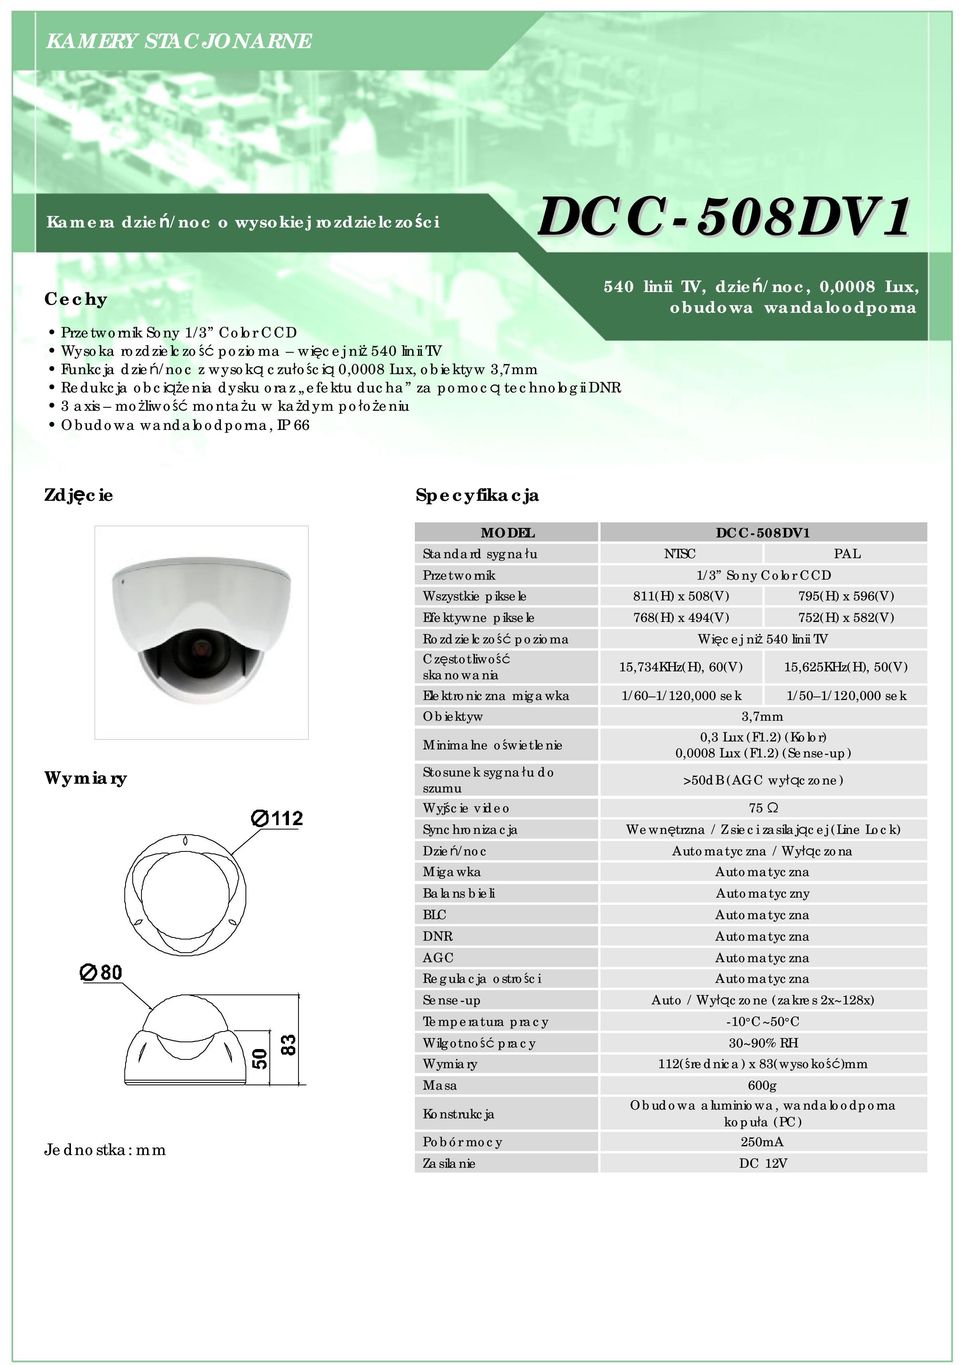 obudowa wandaloodporna DCC-508DV1 Standard sygnału NTSC PAL 1/3 Sony Color CCD Wszystkie piksele 811(H) x 508(V) 795(H) x 596(V) Efektywne piksele 768(H) x 494(V) 752(H) x 582(V) Rozdzielczość